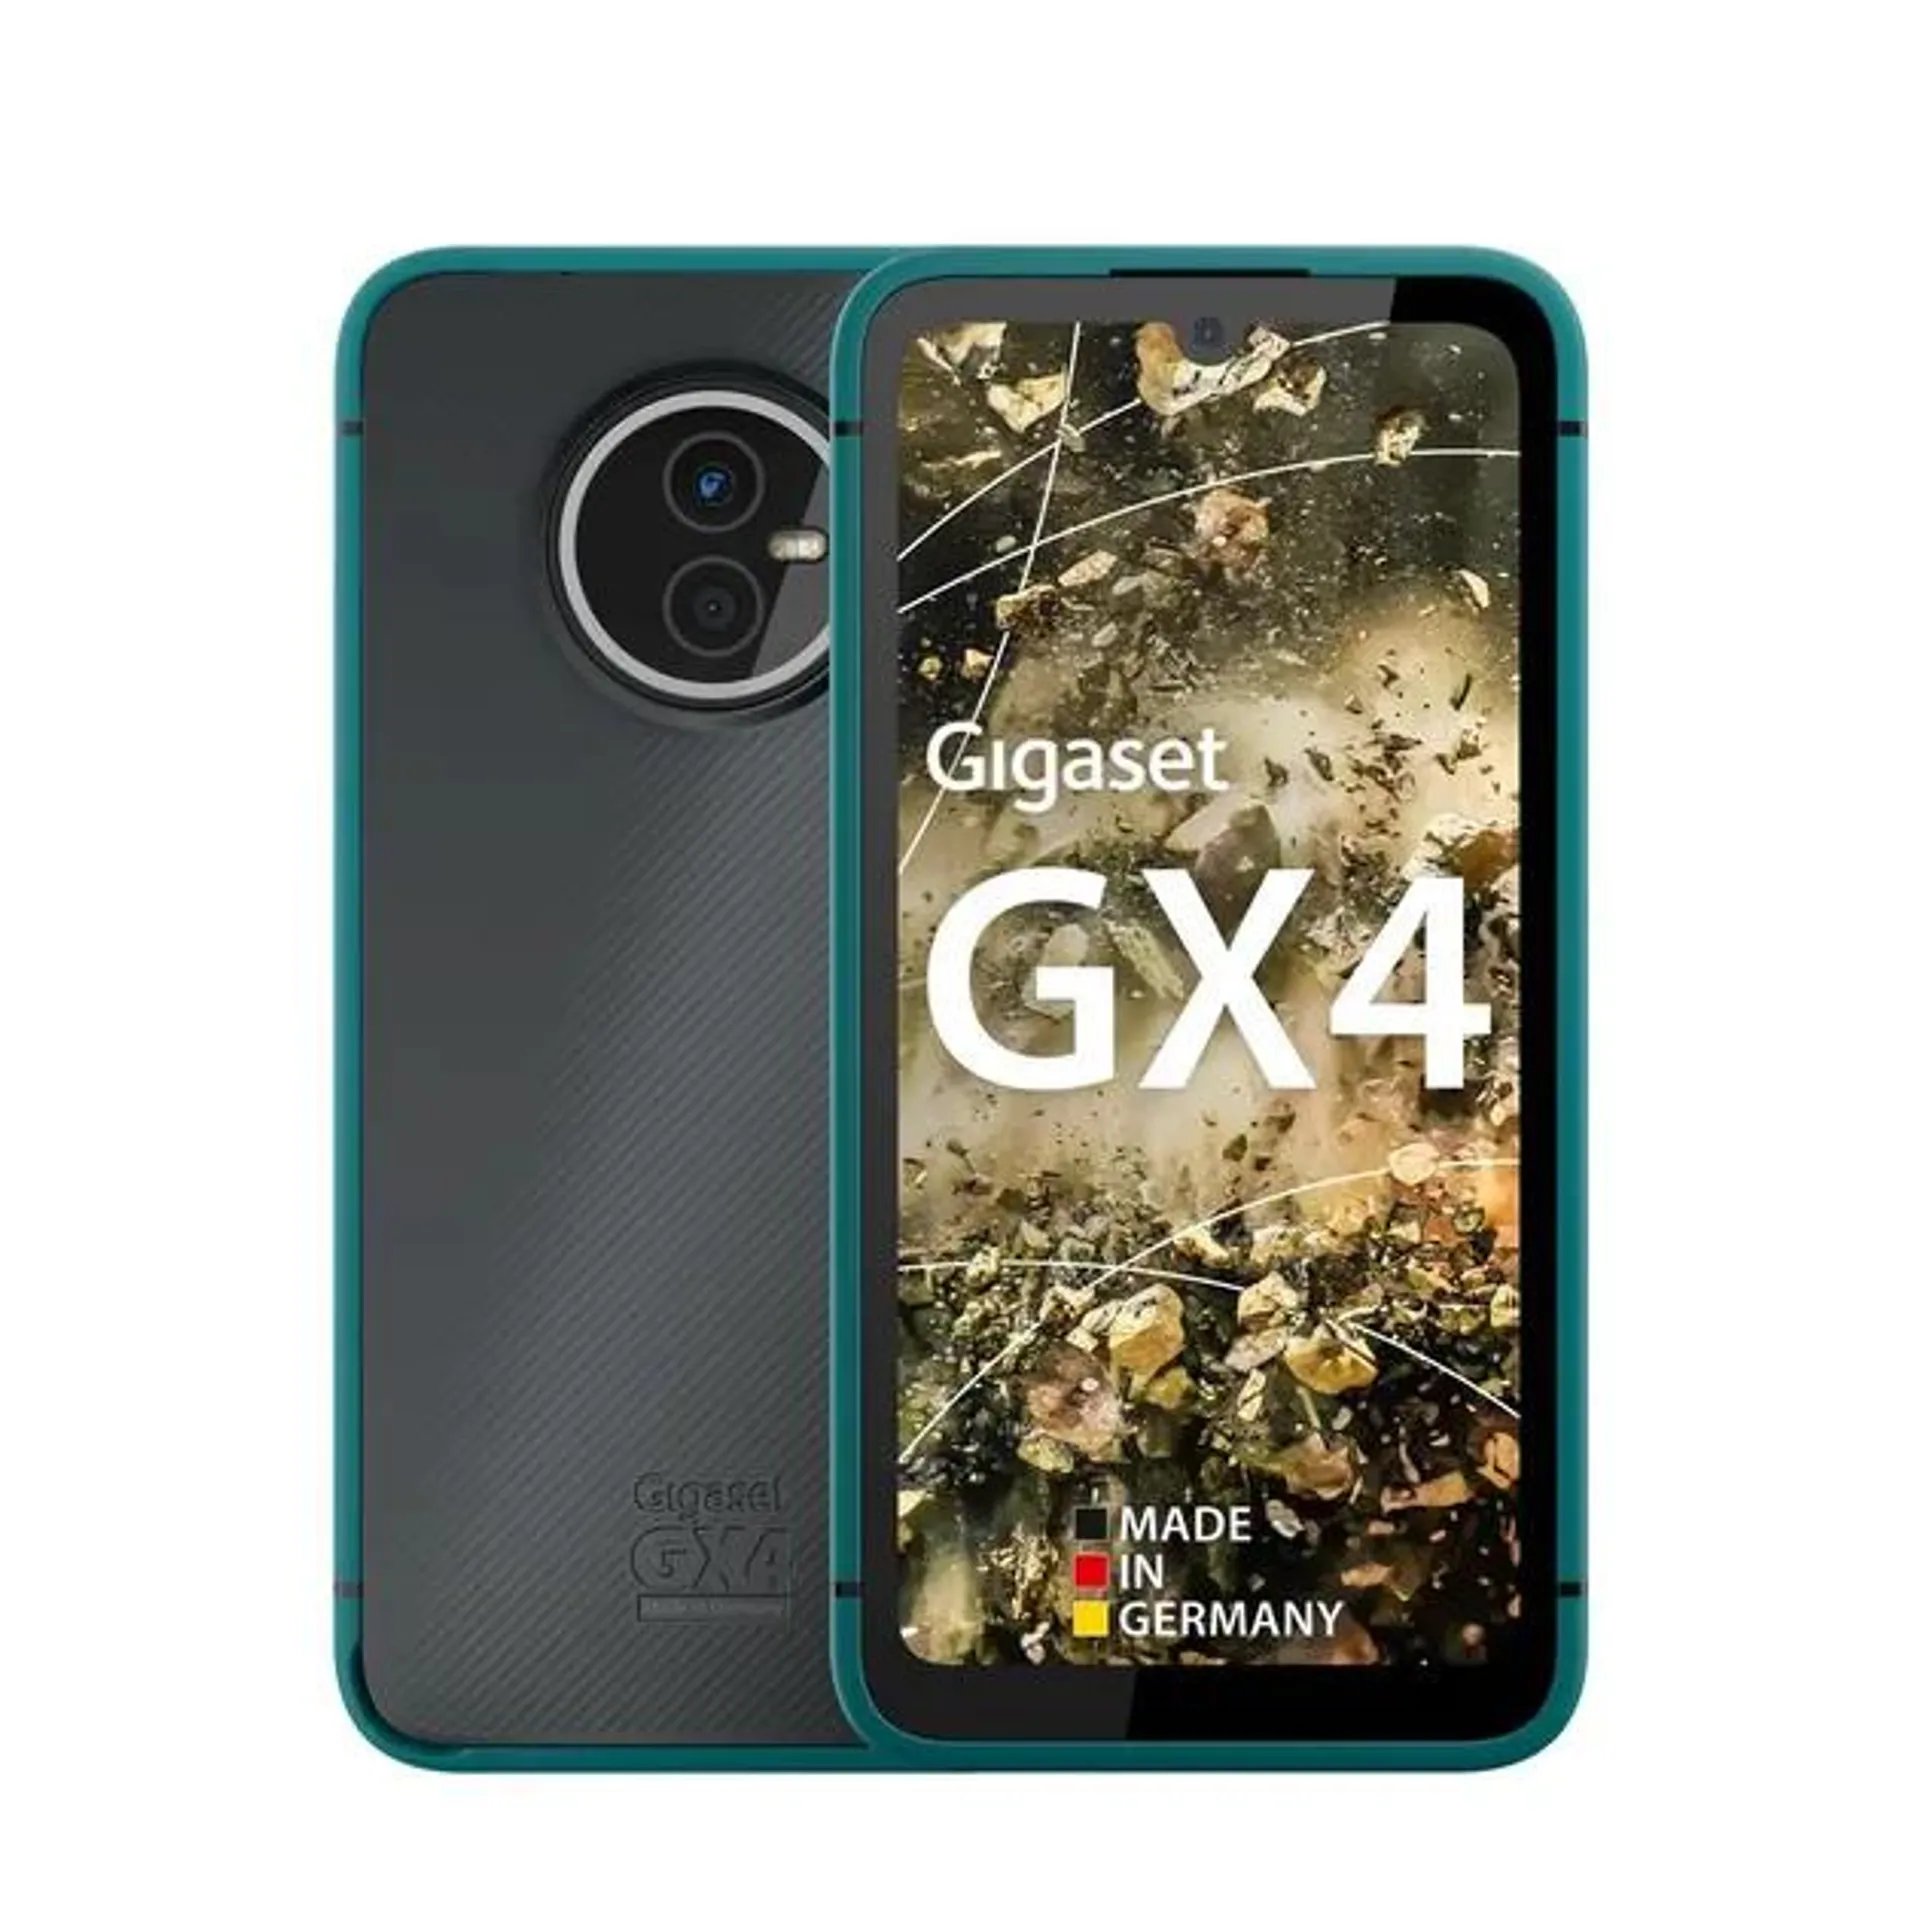 Gigaset GX4 - 64GB Petrol